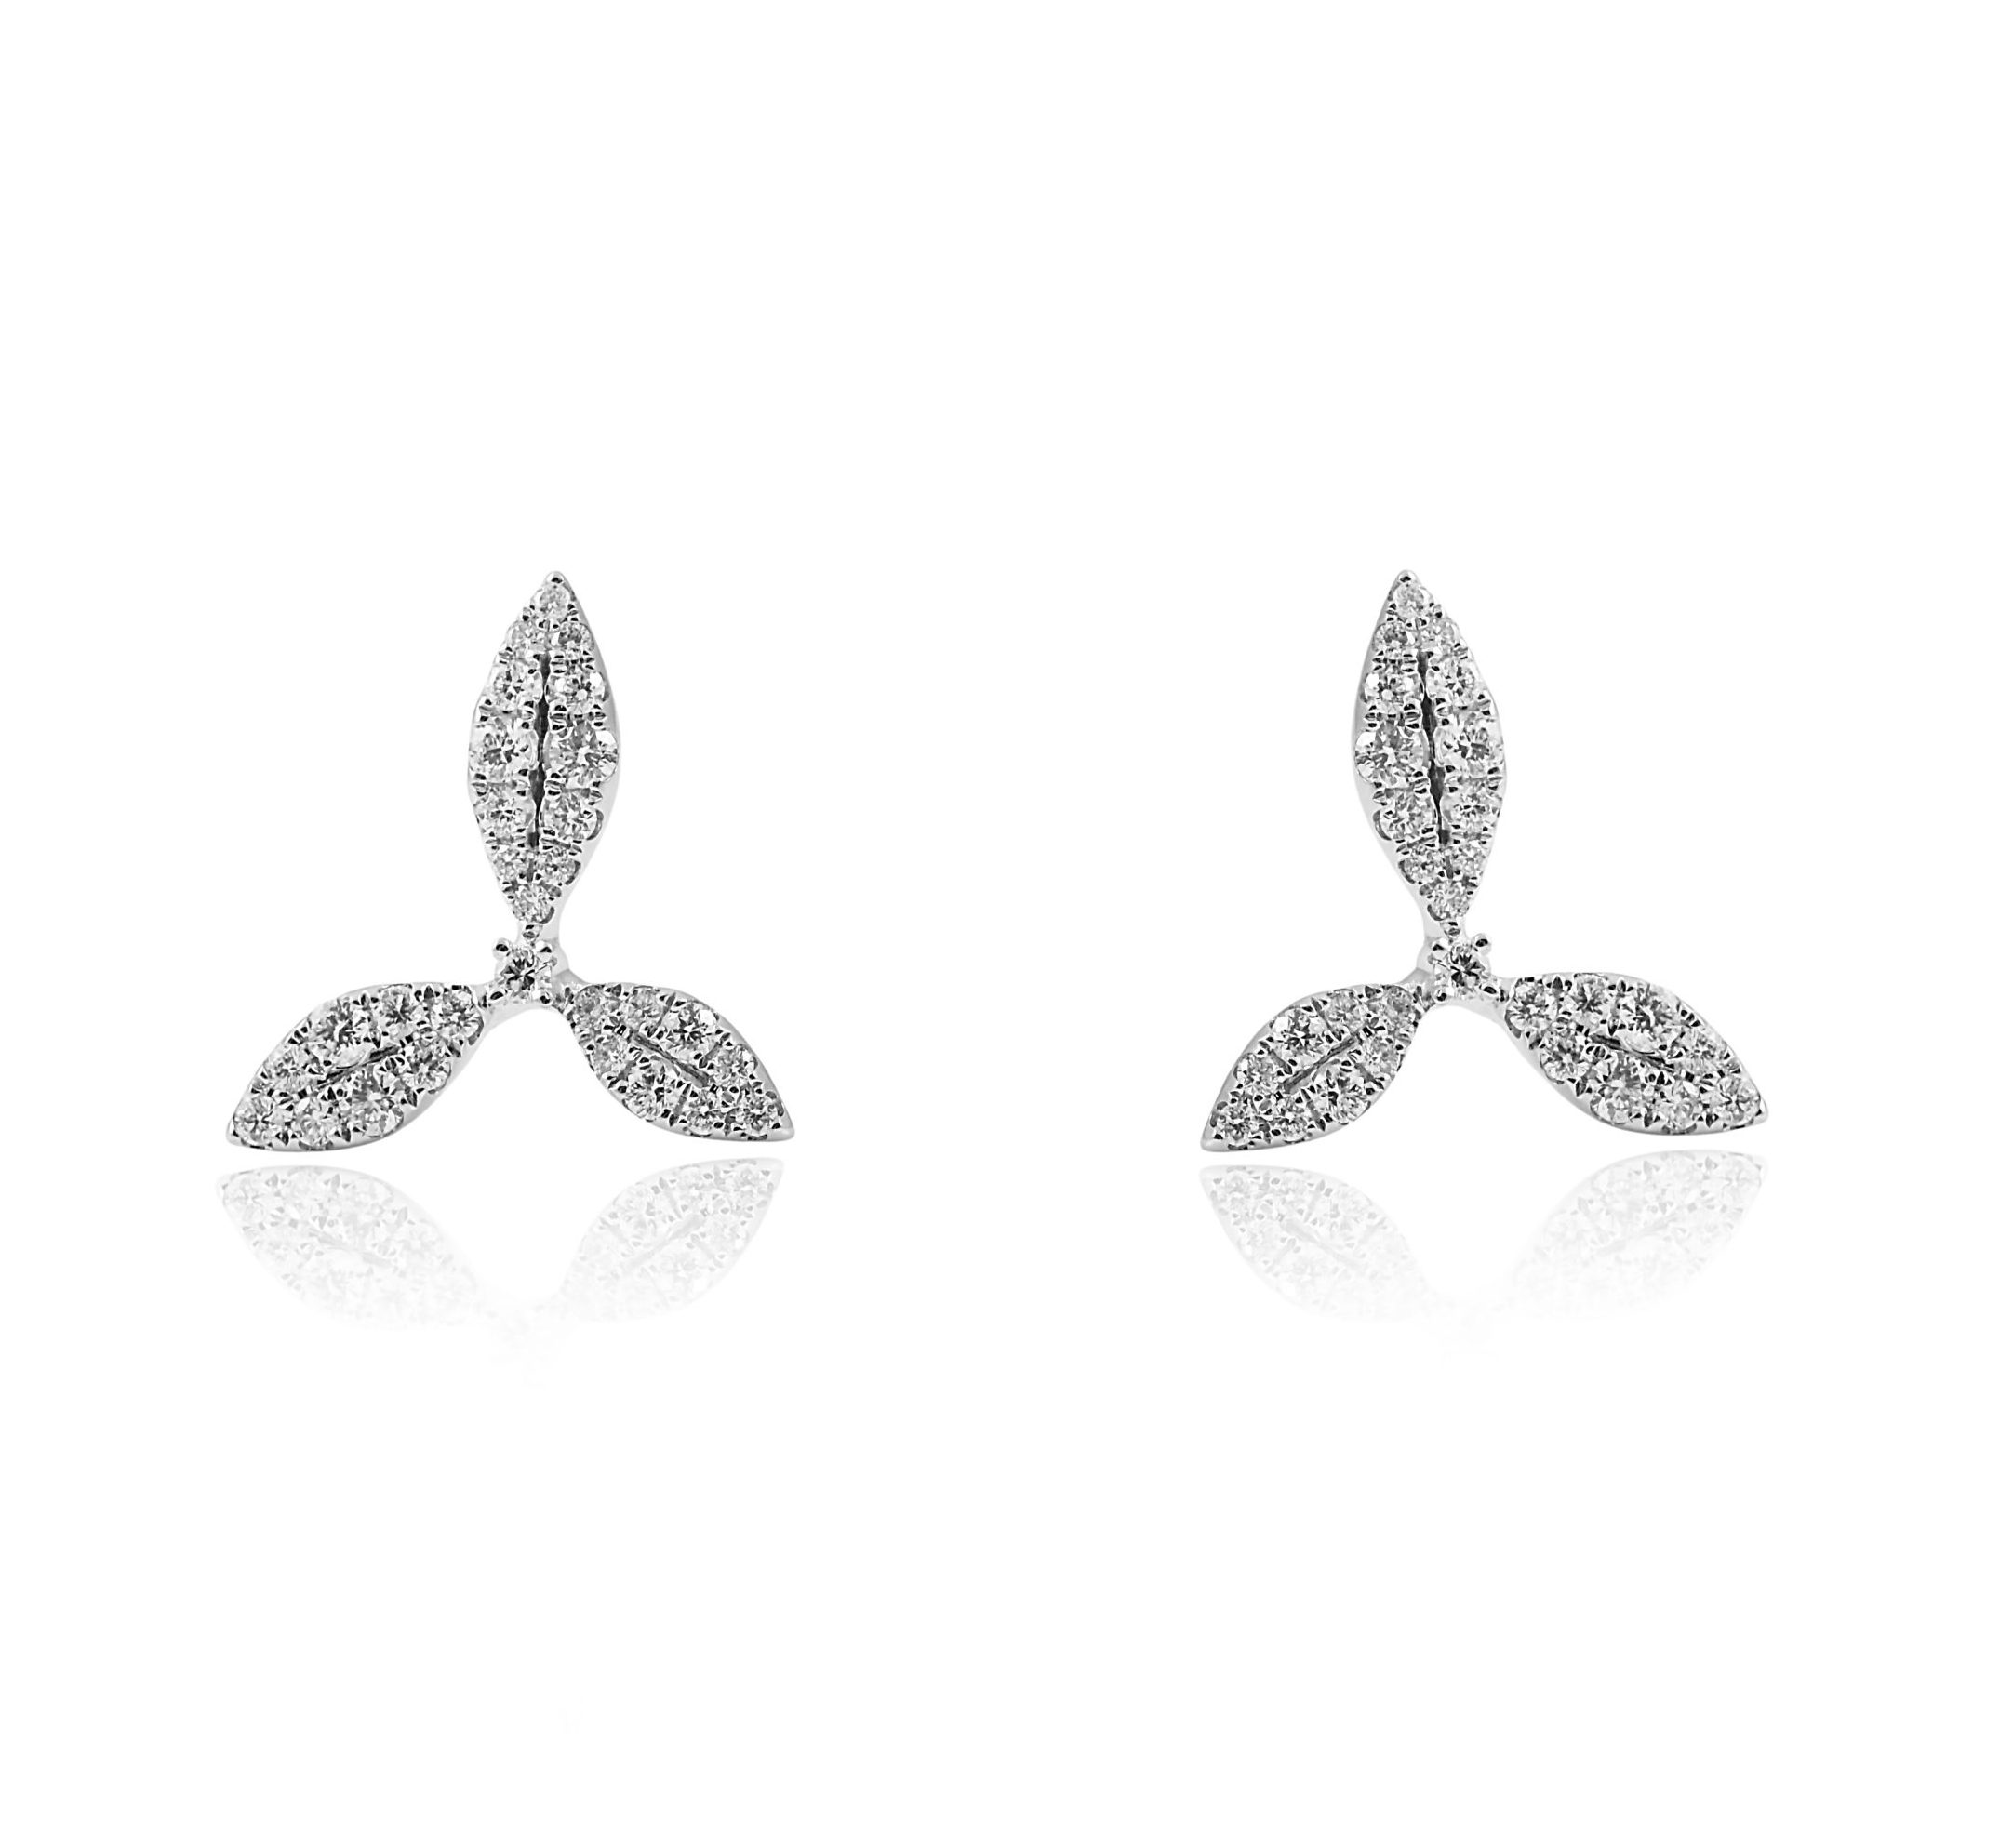 Three leaf diamond stud earrings | B24249 • Diamonds & Pearls Perth